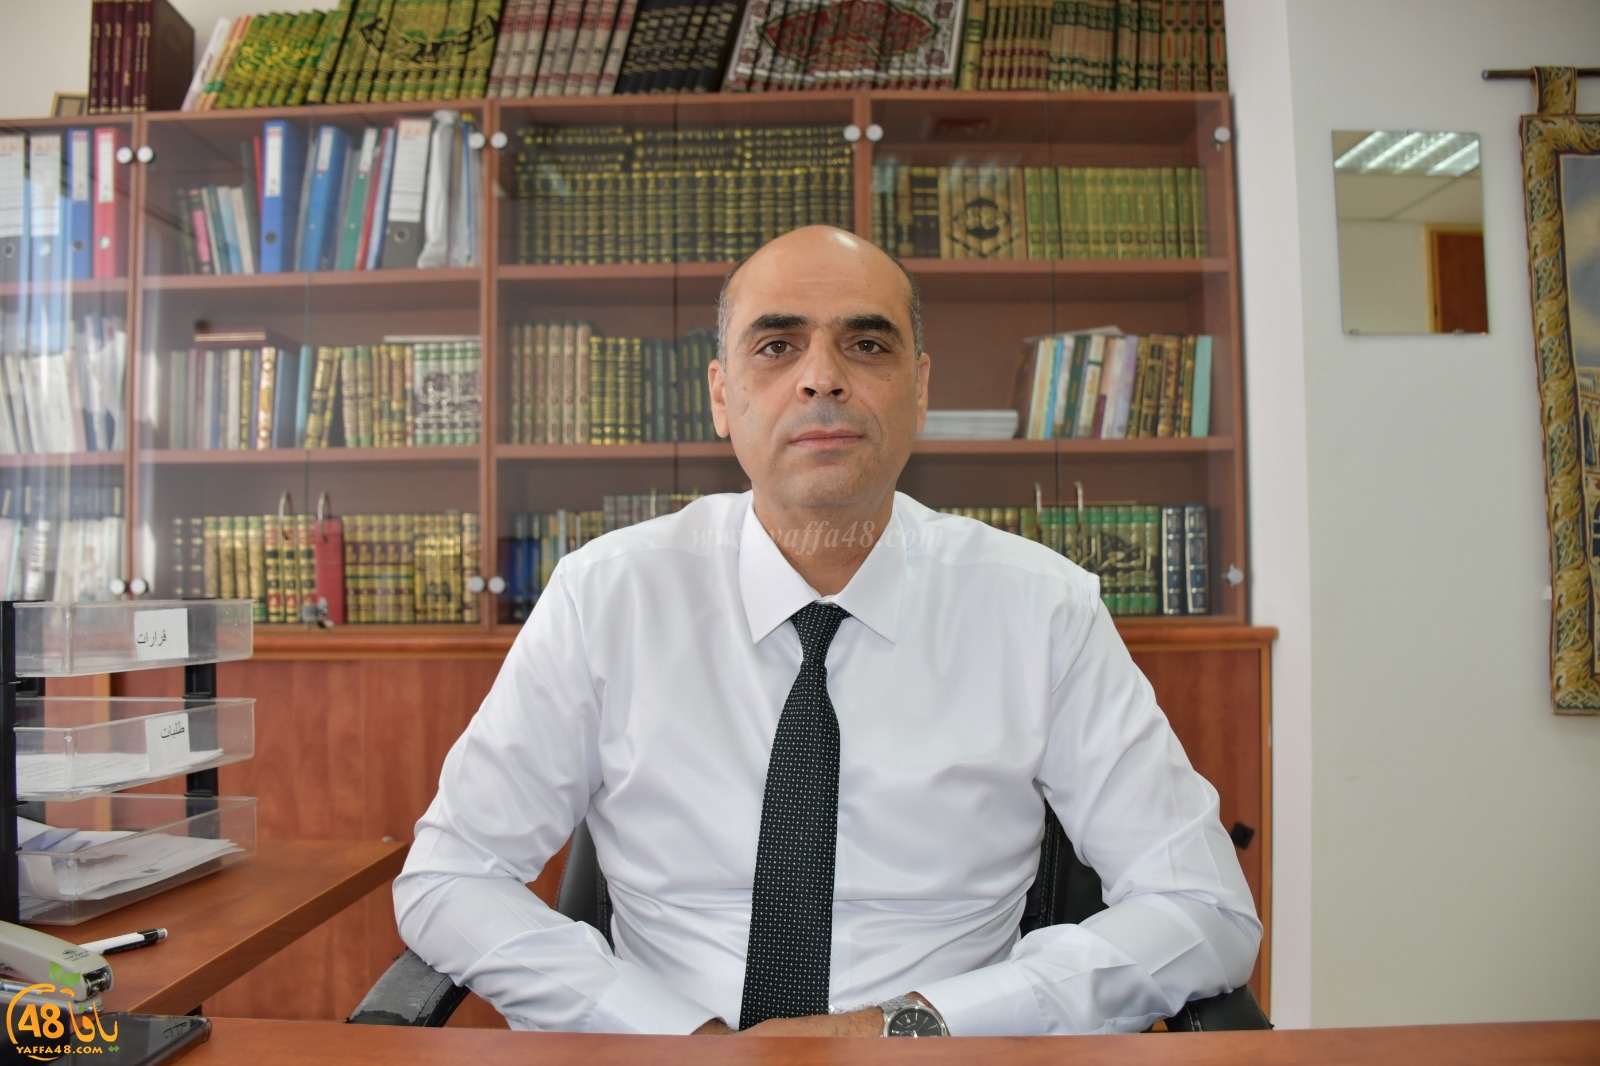  شاهد: لقاء مع القاضي د. اياد زحالقة مدير المحاكم الشرعية حول نقل المحكمة الشرعية من يافا